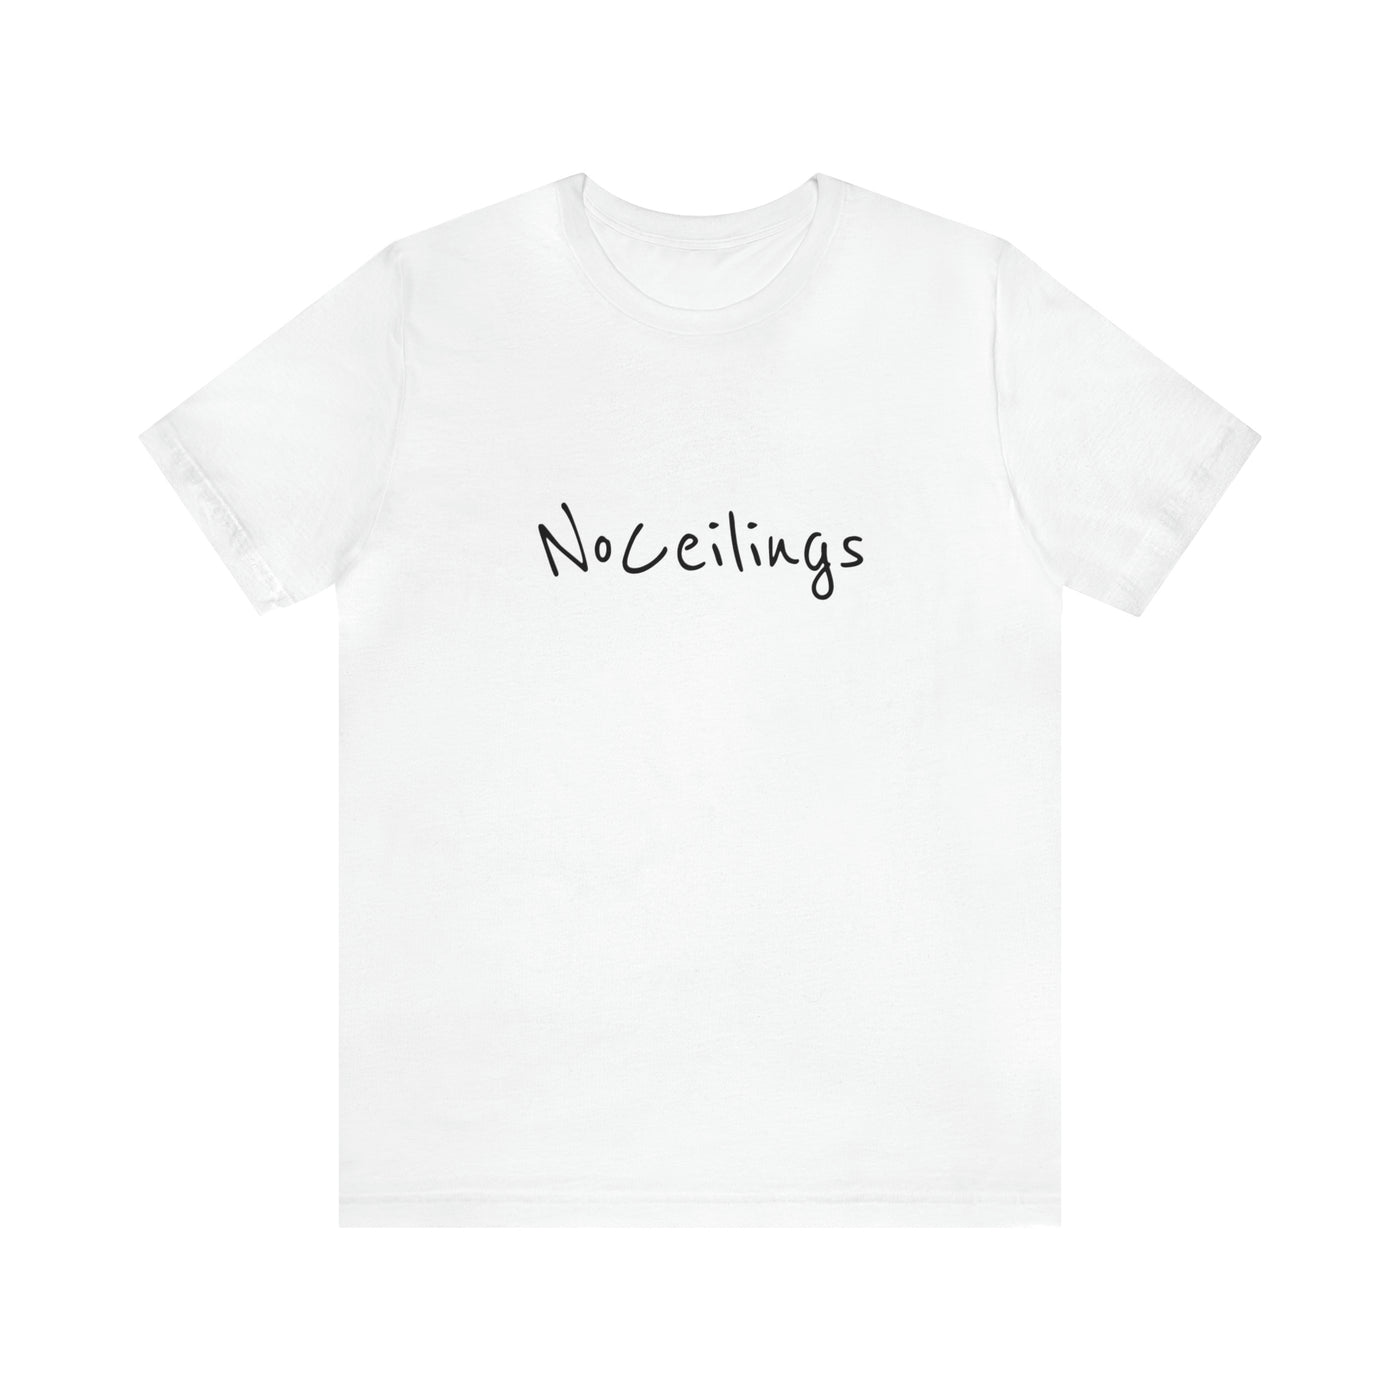 Noceilings Simple Unisex Jersey Short Sleeve Tee - NoCeilingsClothing